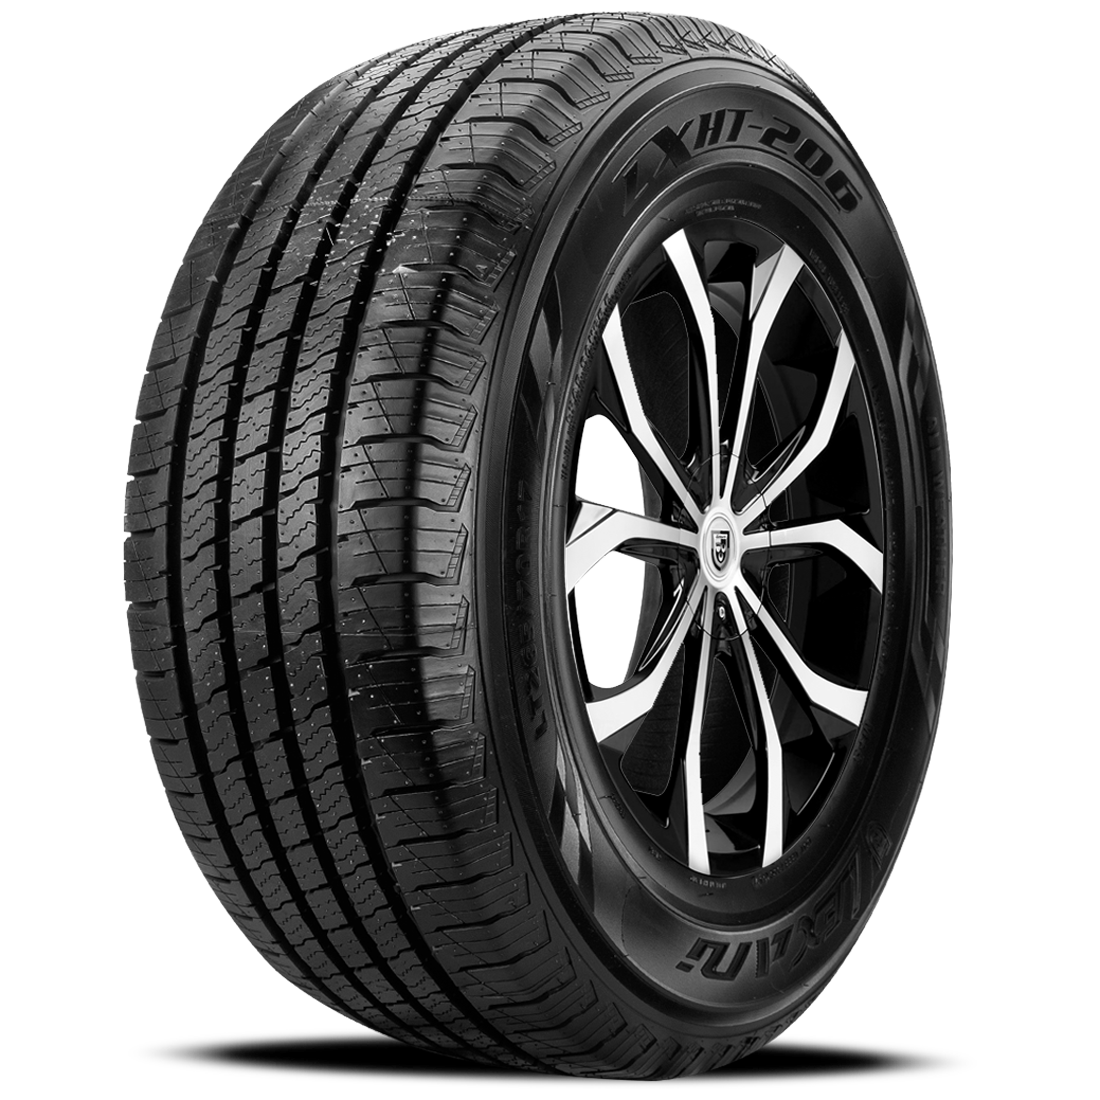 LEXANI LXHT-206 LT225/75R16 (29.3X8.9R 16) Tires